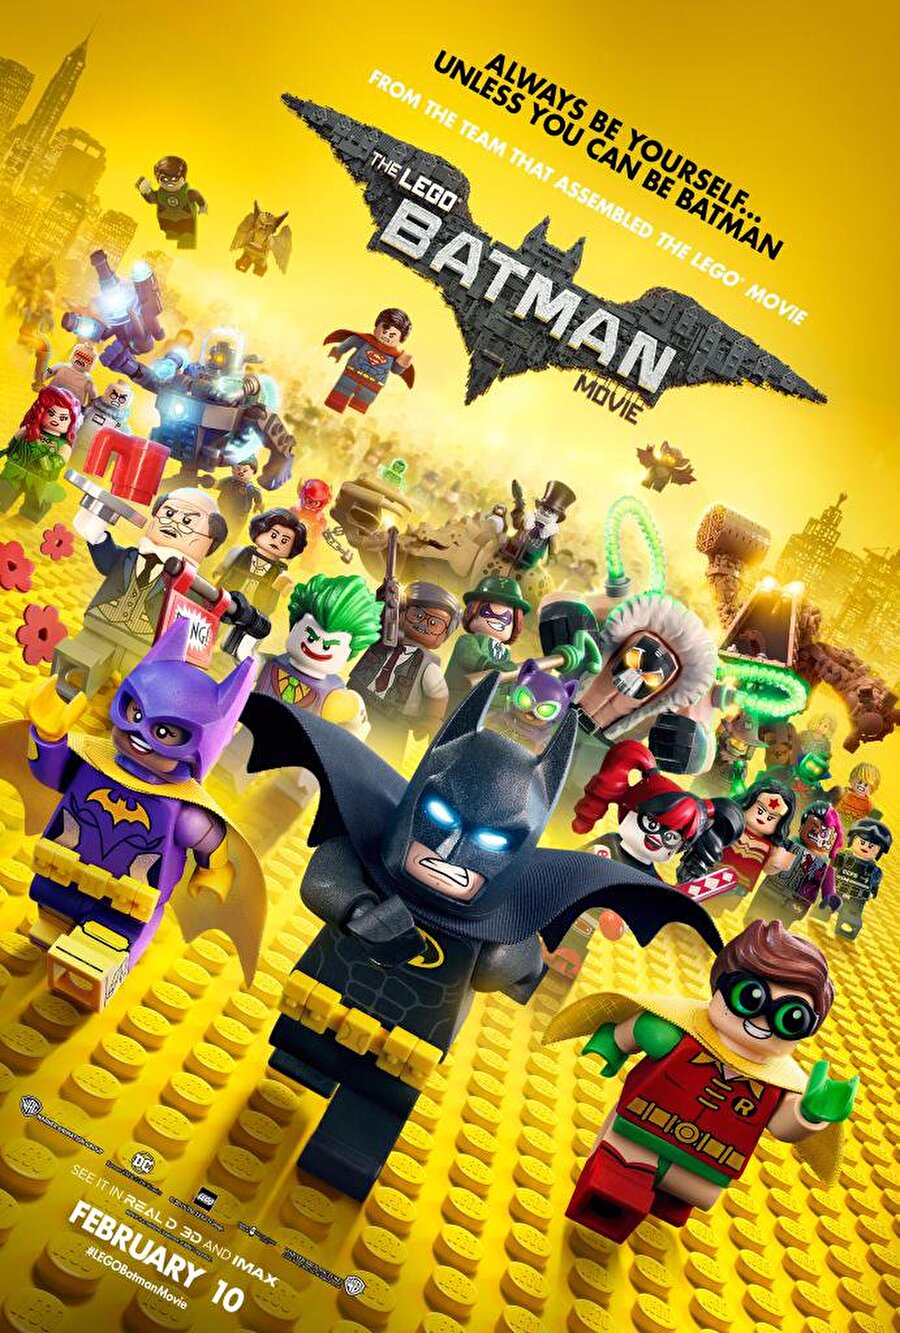 Lego Batman Filmi
Chris McKay'in yönettiği animasyon türündeki filmin seslendirmelerini Rosario Dawson, Will Arnett, Ralph Fiennes ile Michael Cera yaptı.

Çok bencil bir karaktere sahip olan ve yıllardır yalnız yaşayan Batman, bu Lego filminde yanına aldığı Robin ile kendini yeniden keşfetme yolculuğuna çıkacak ve Gotham'ı Joker'in elinden kurtarabilmek için takım çalışmasının ne kadar önemli olduğunu öğrenecek.
